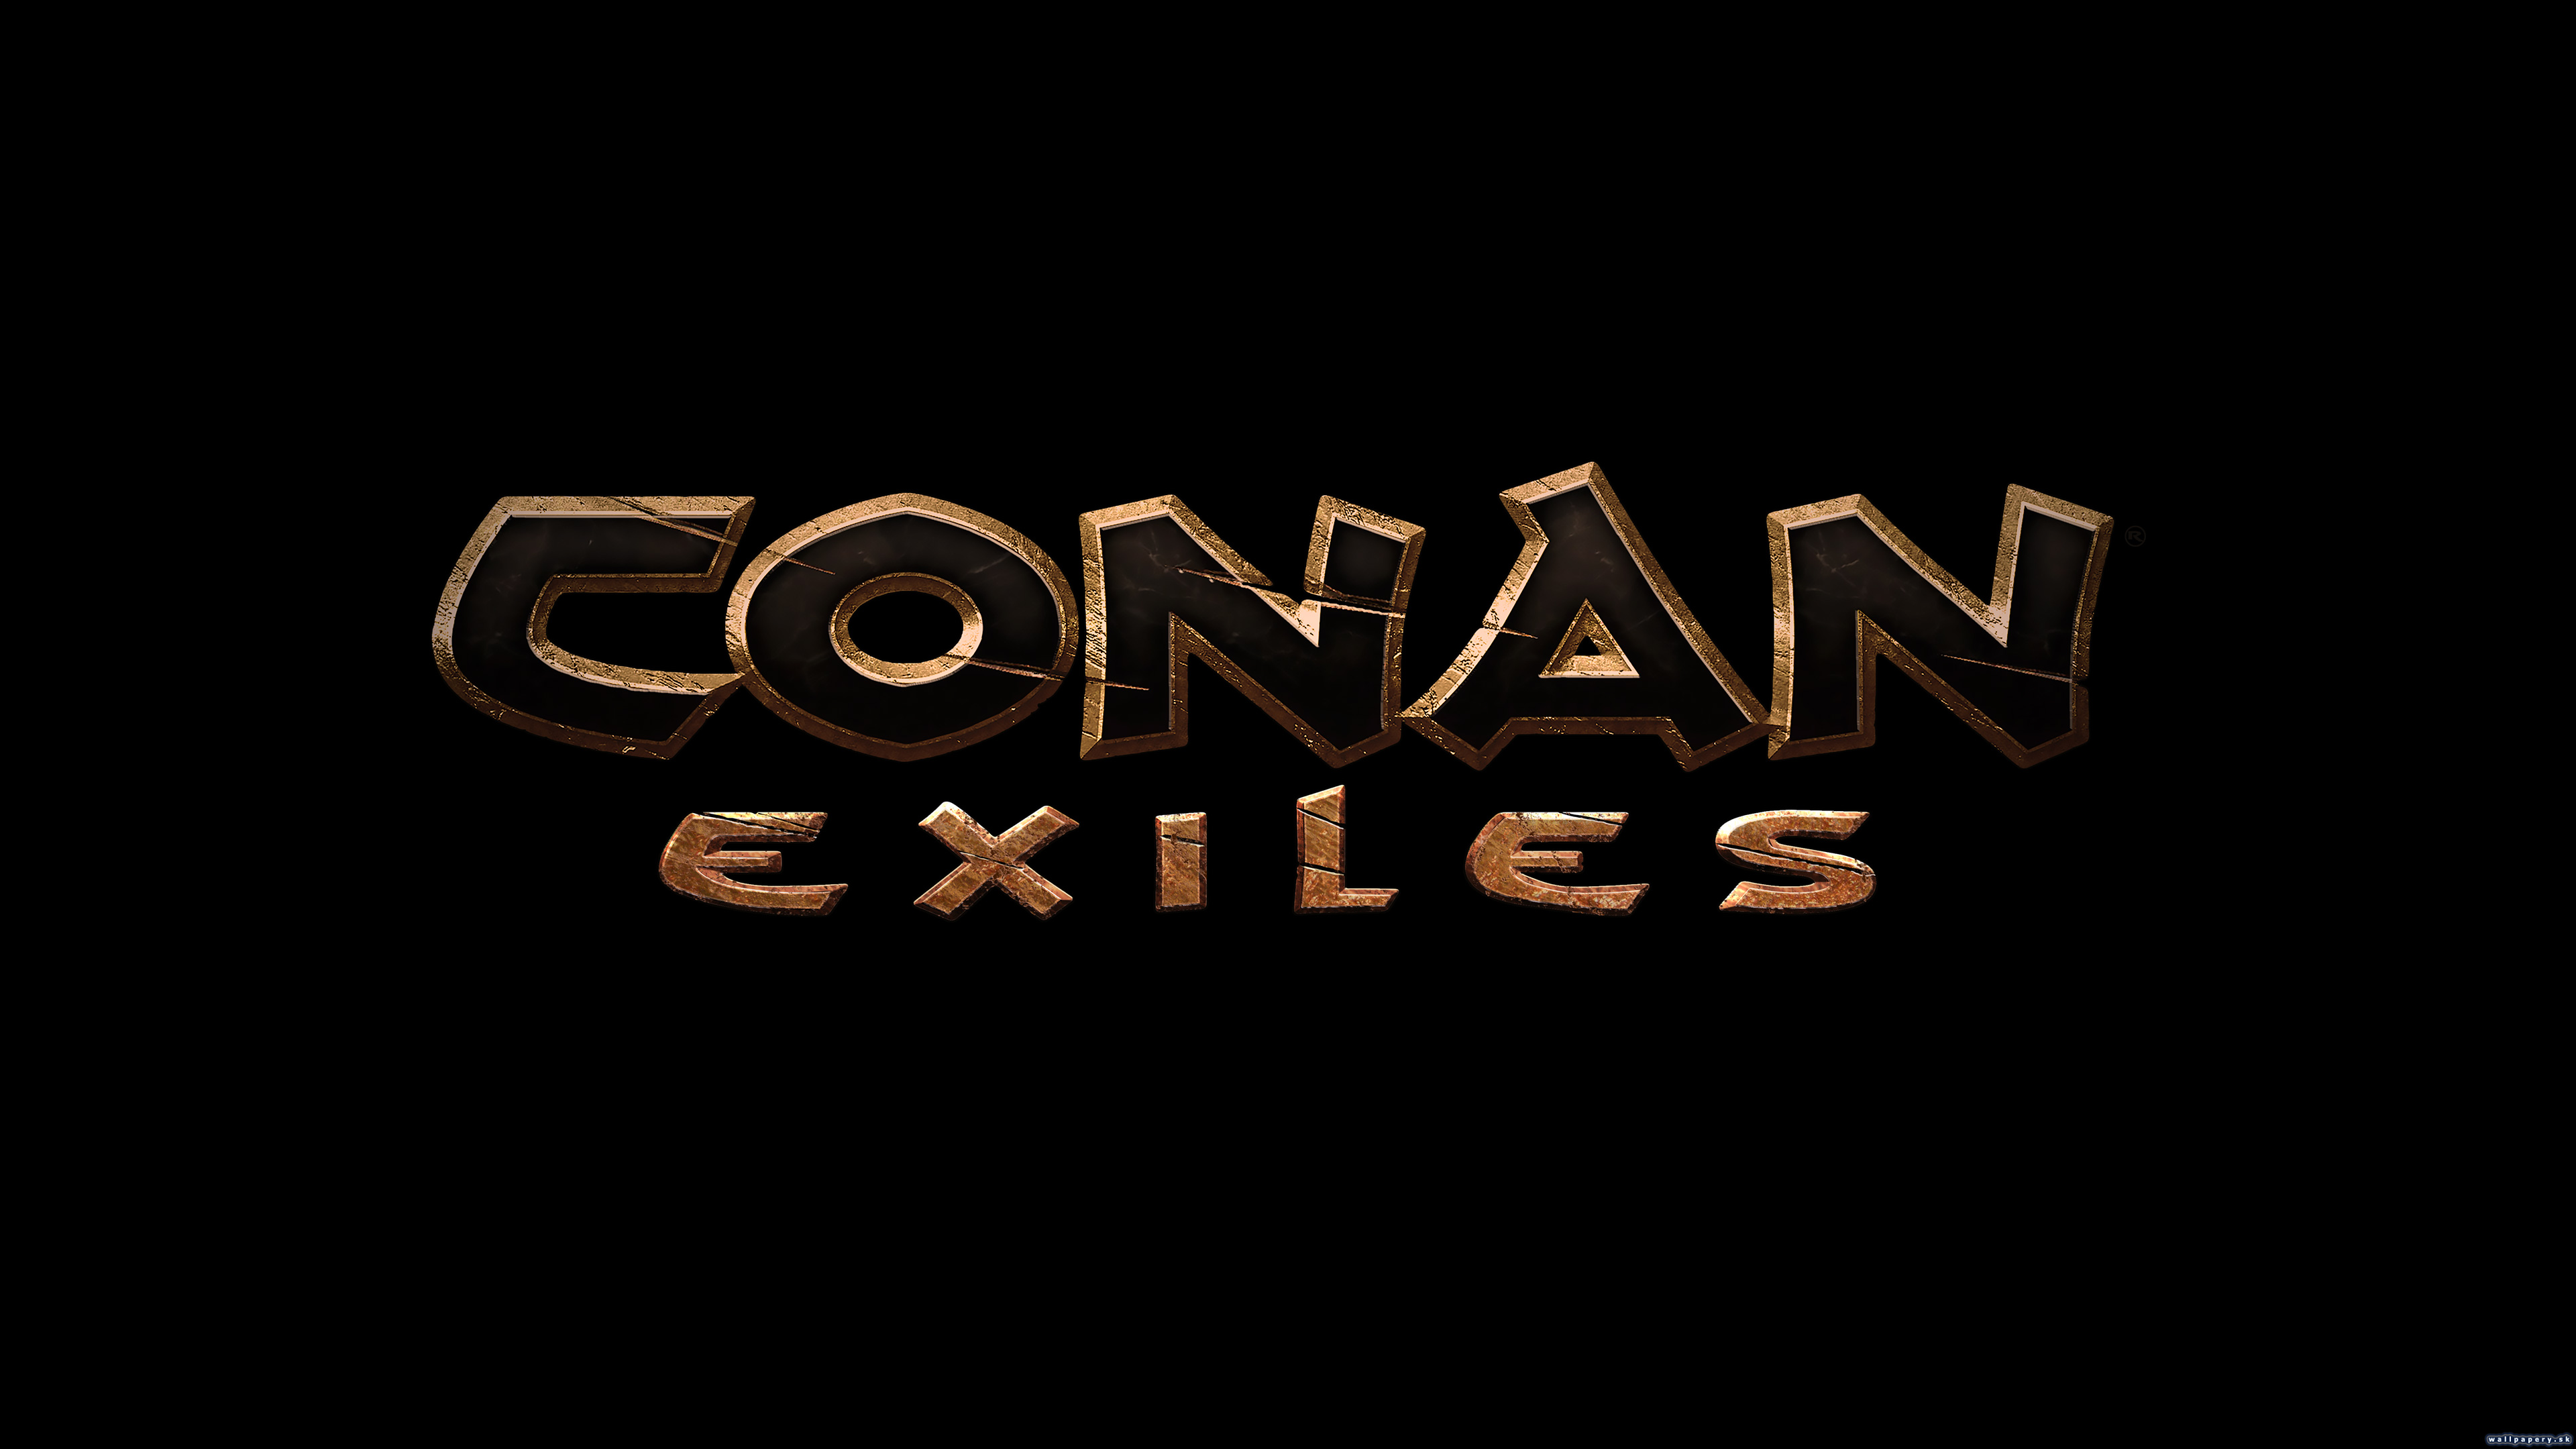 Conan Exiles - wallpaper 3